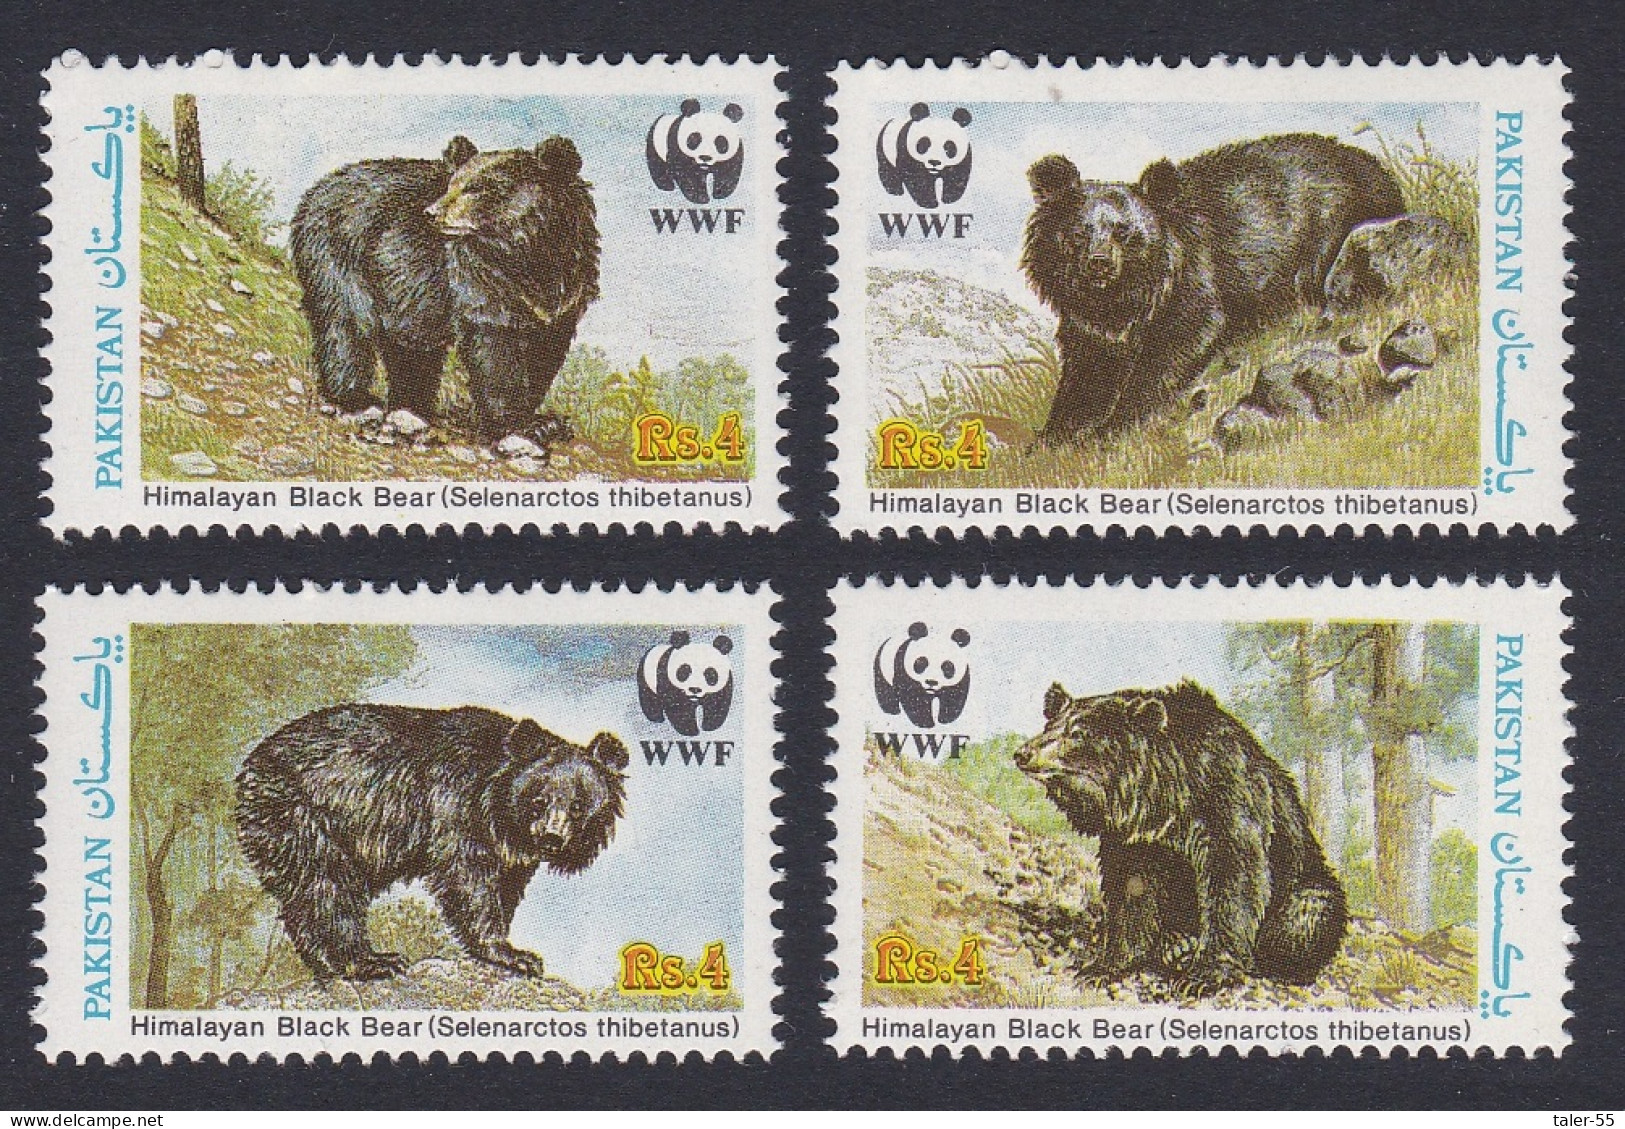 Pakistan WWF Himalayan Black Bear 4v 1989 MNH SG#780-783 MI#759-762 Sc#719 A-d - Pakistan